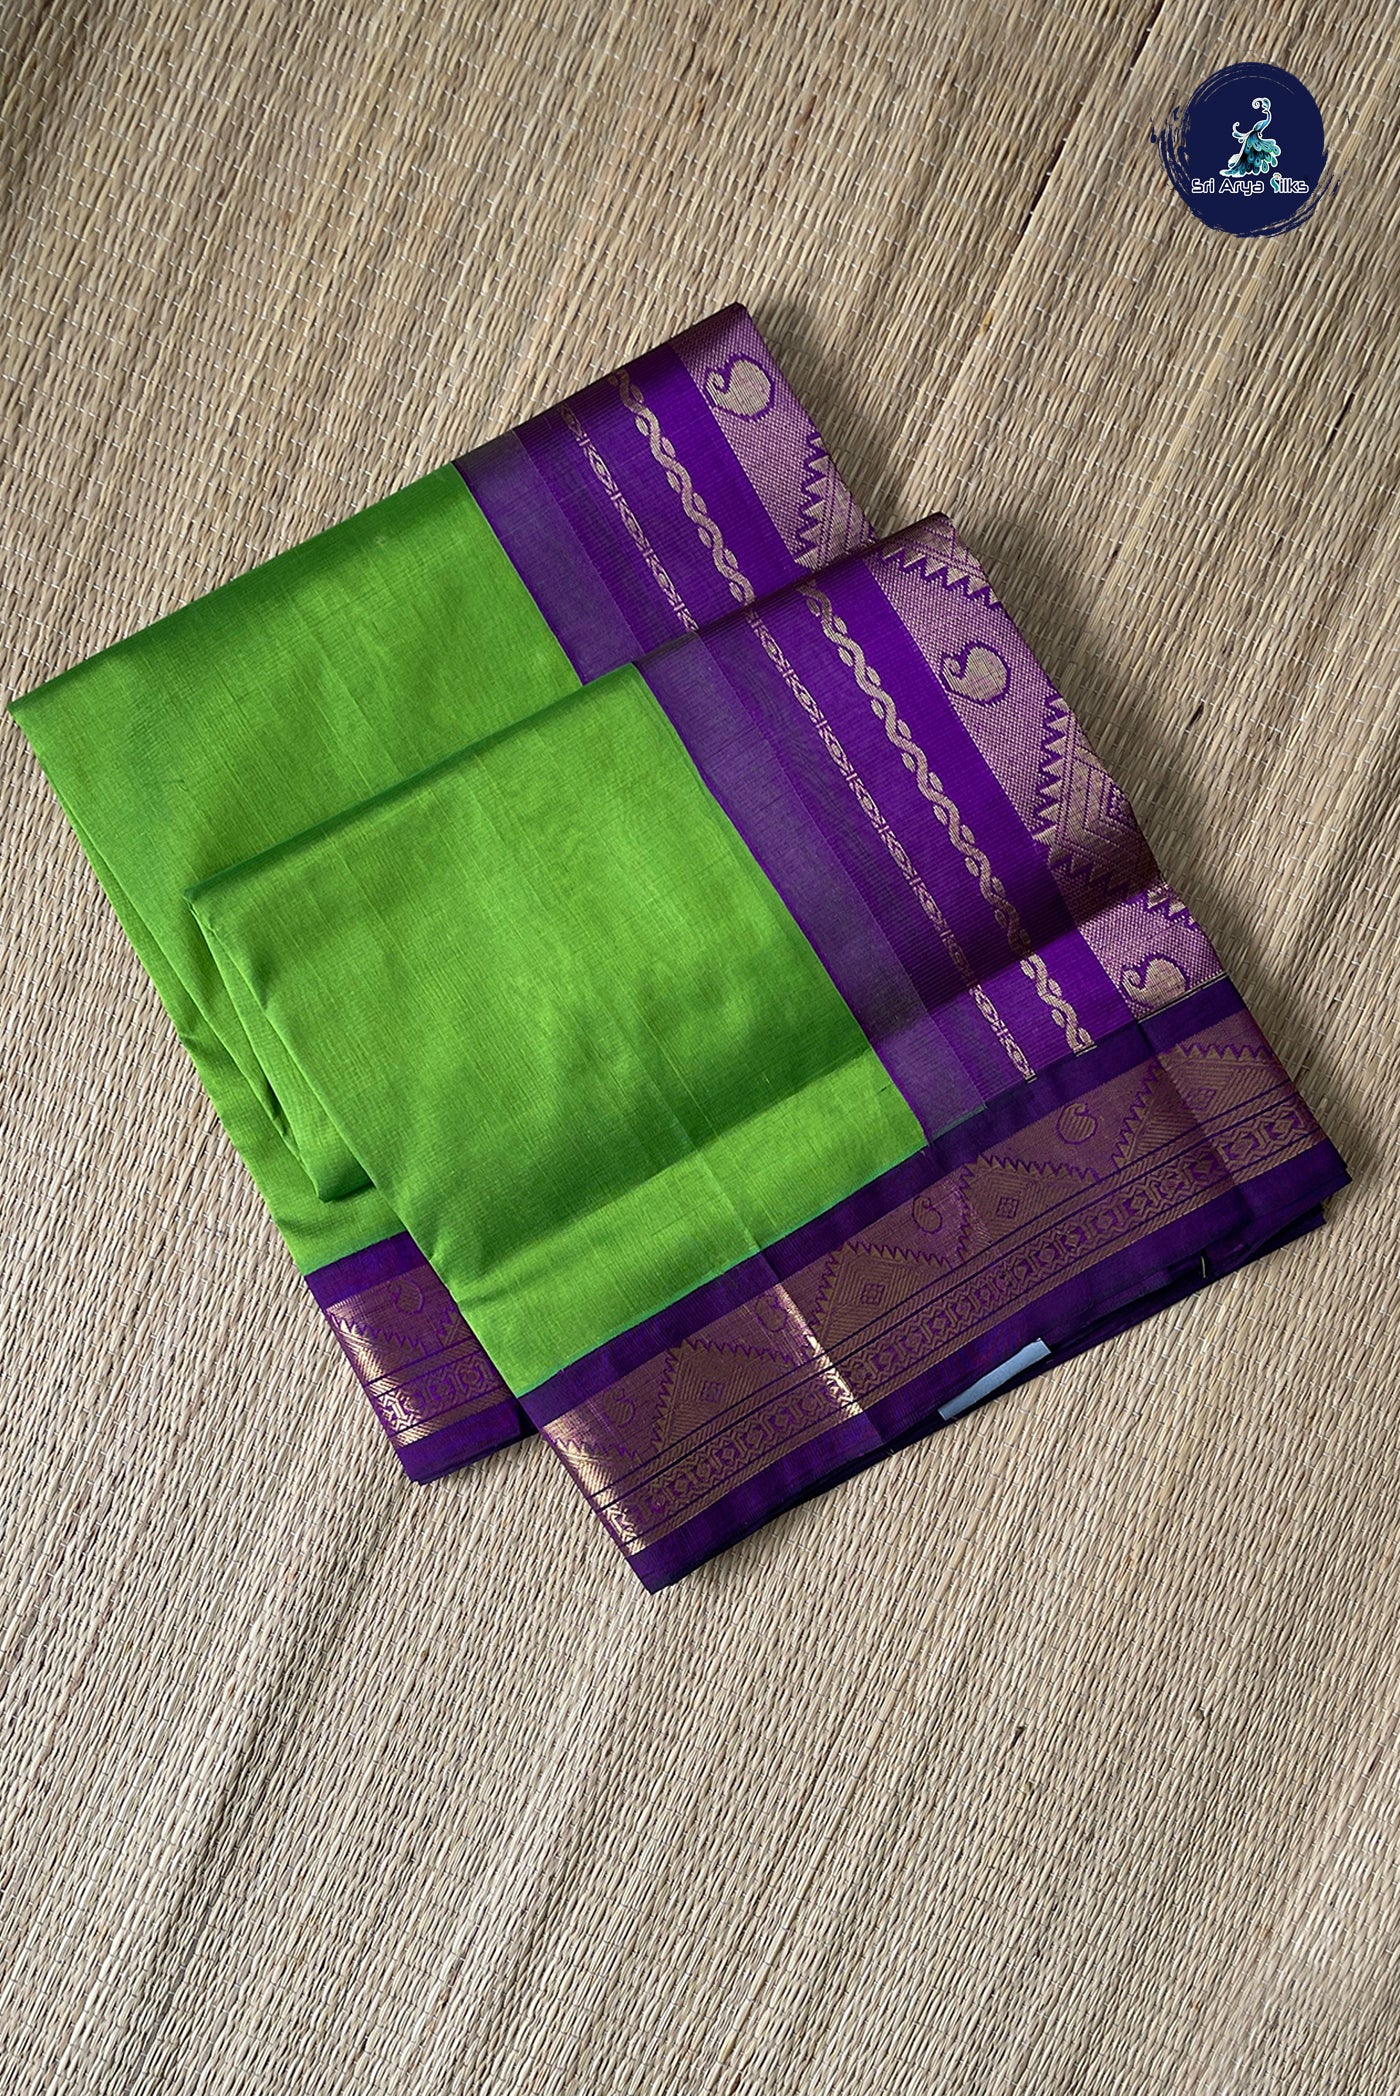 Lime Green Vaira Oosi Silk Cotton Saree With Vaira Oosi Pattern